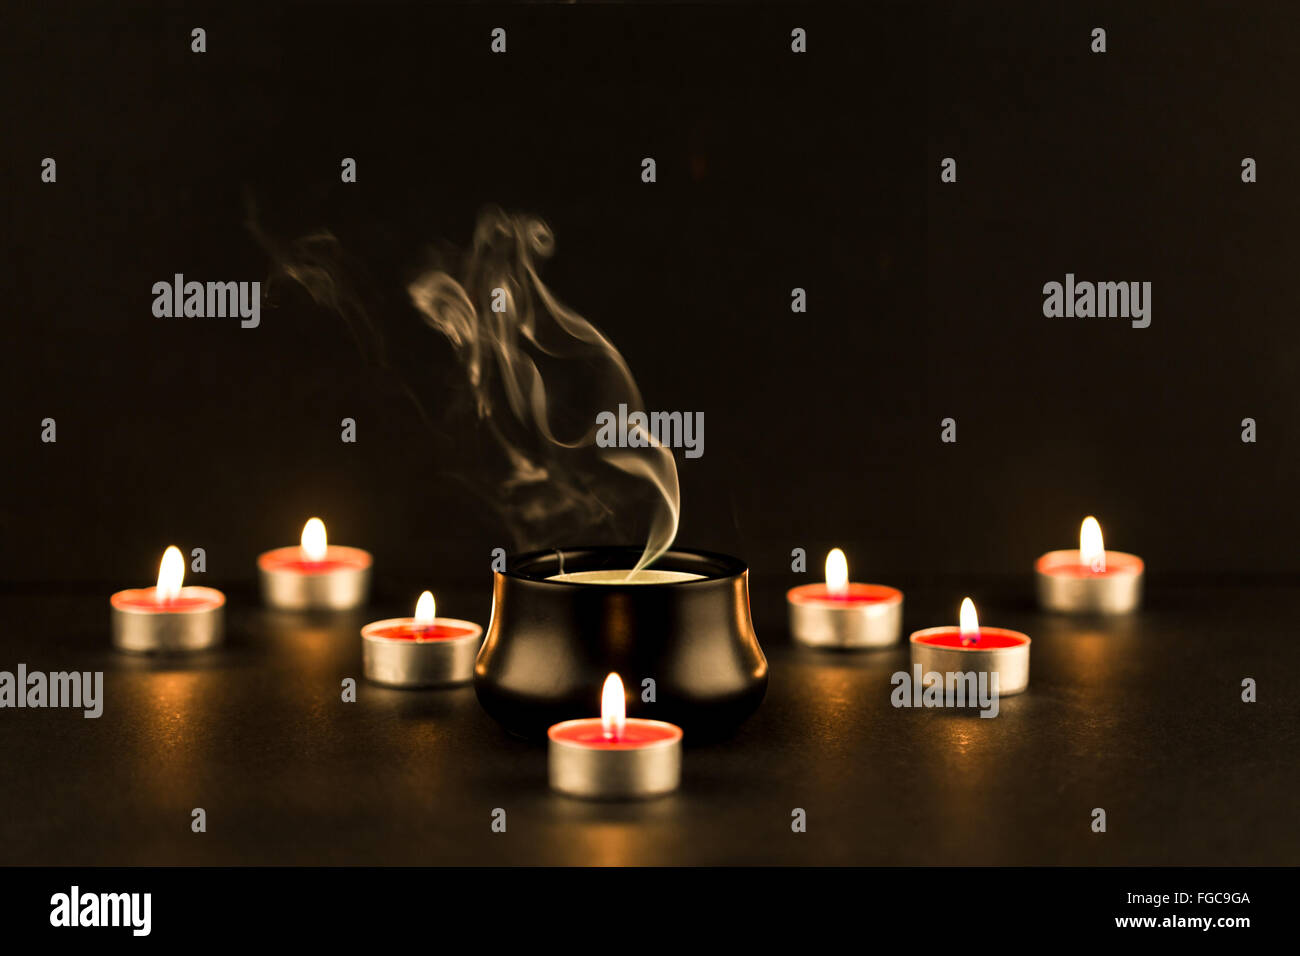 Gruppe von brennenden Kerzen und eine große Kerze erlischt in der Mitte mit  komplizierten Rauch Geplapper steigt Stockfotografie - Alamy